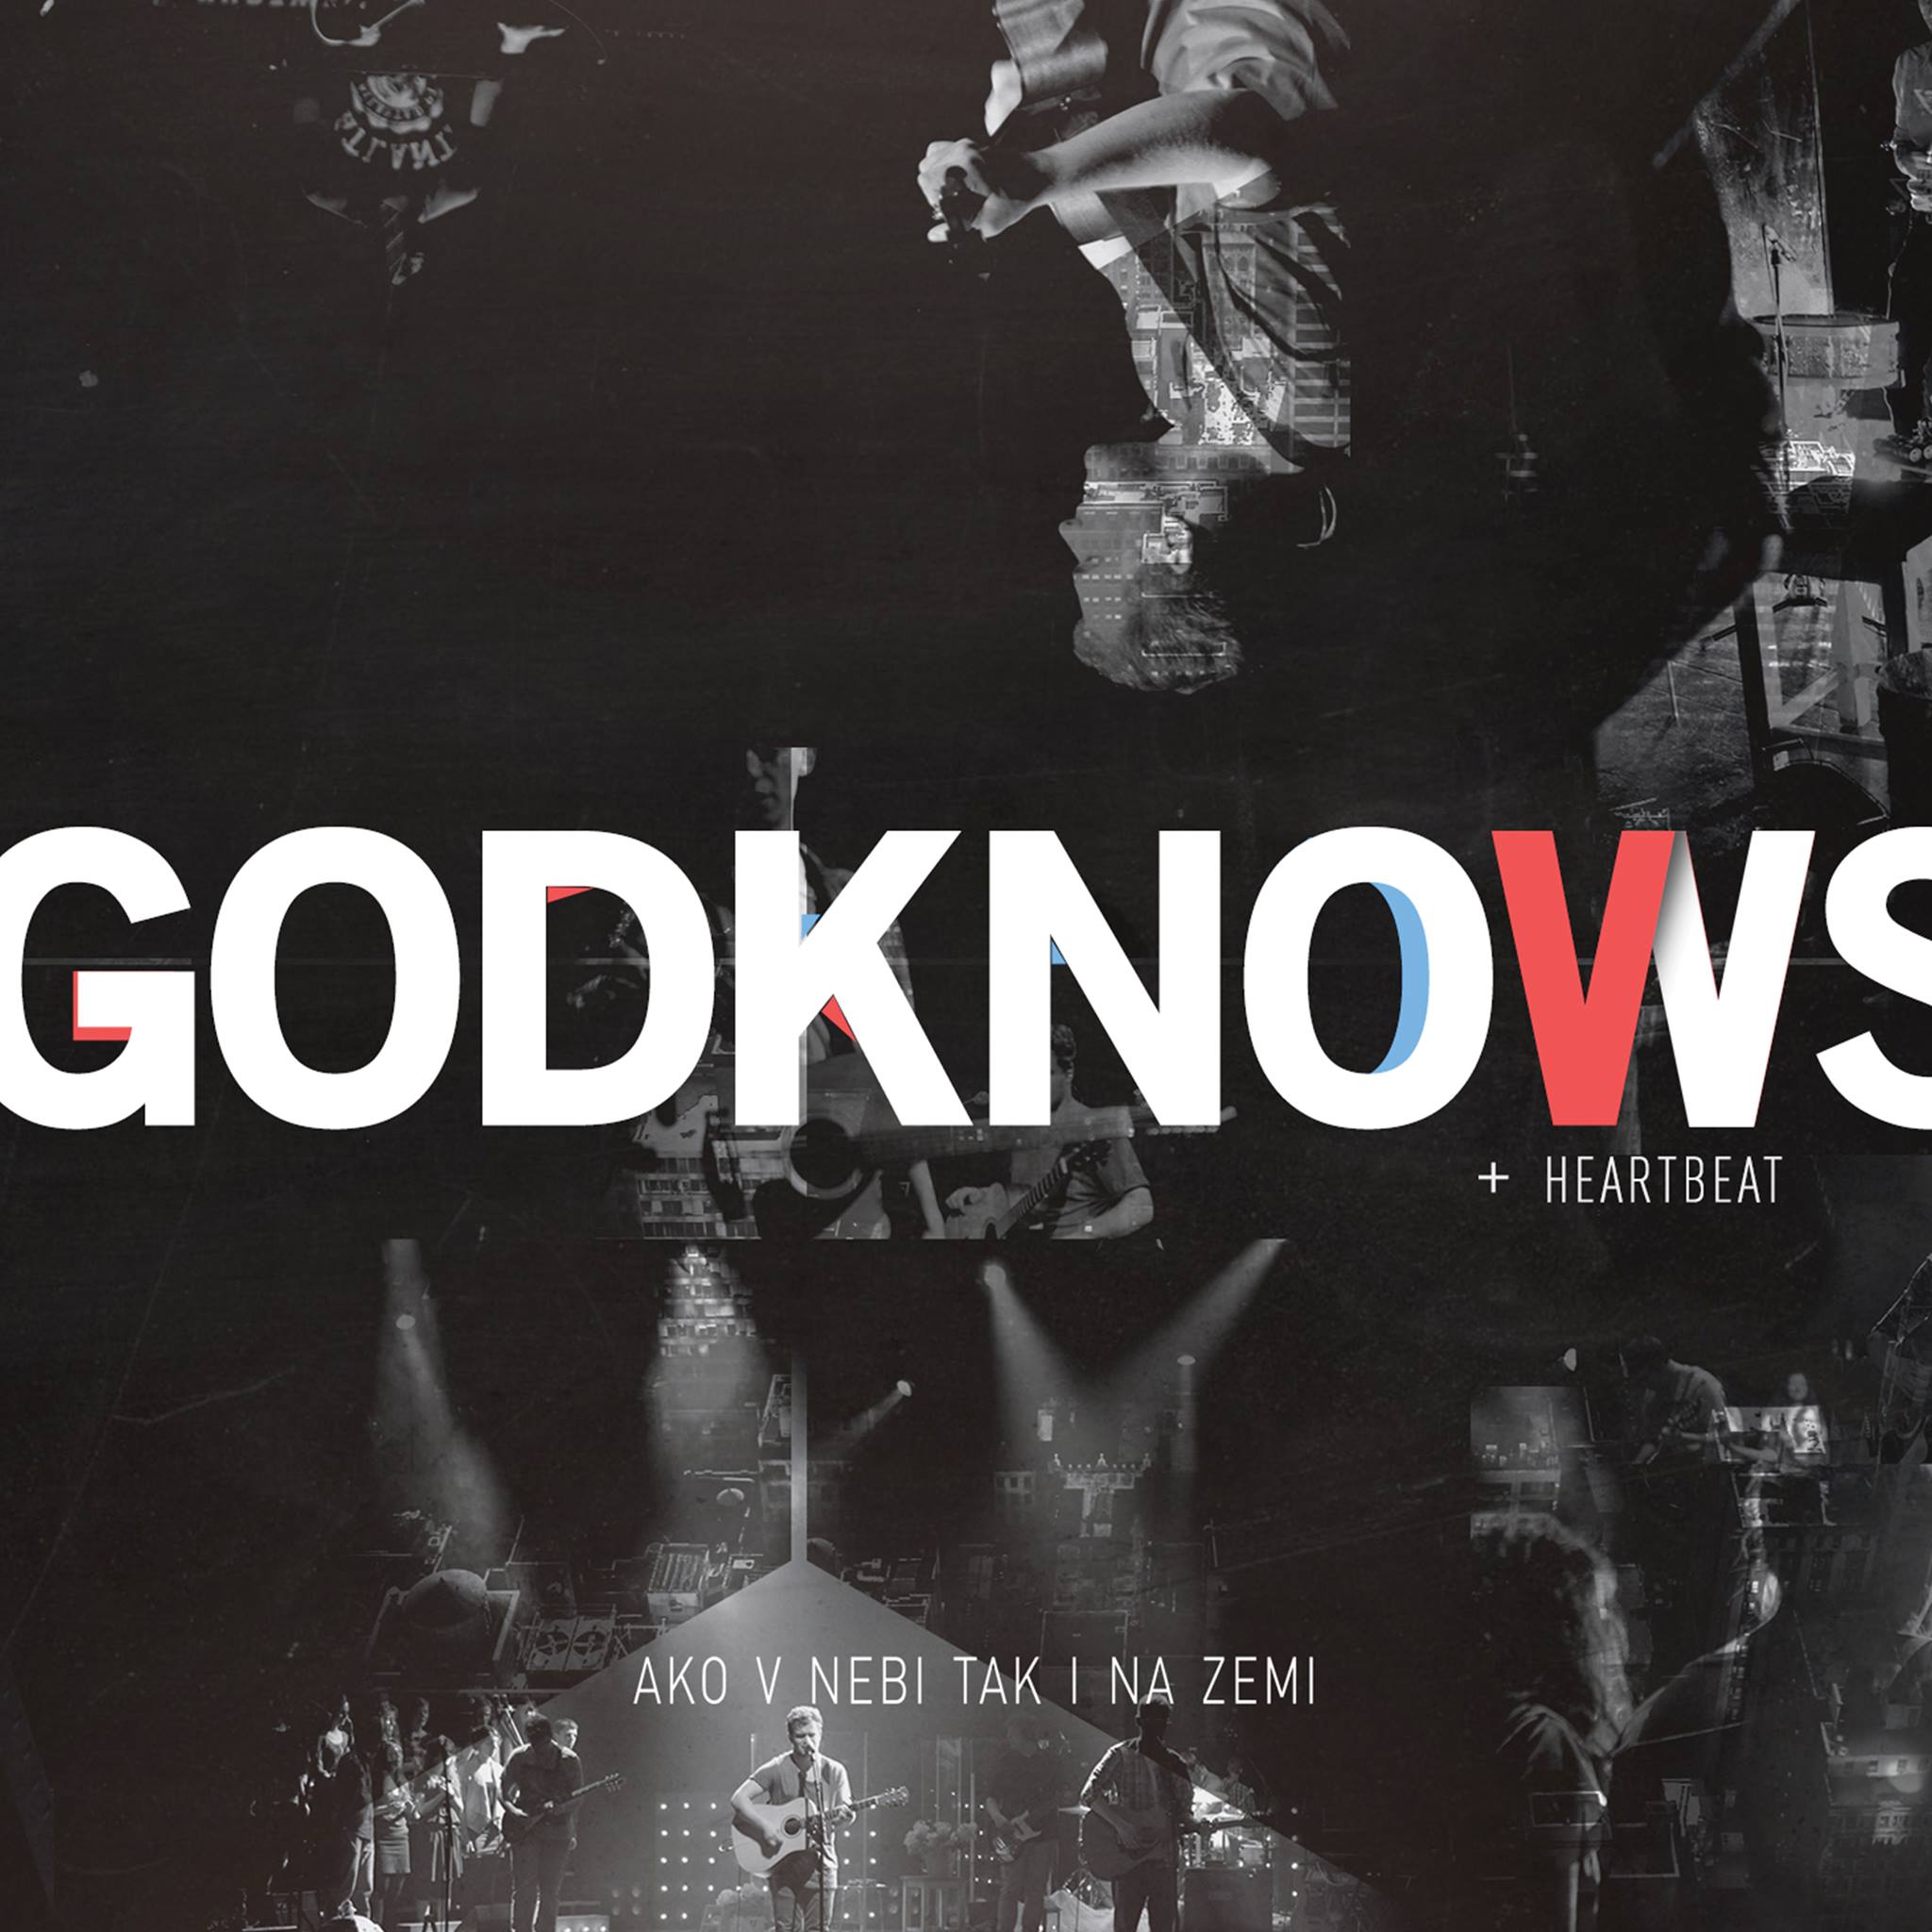 GodKnows & Heartbeat - 2013 - Ako v nebi, tak i na zemi CD